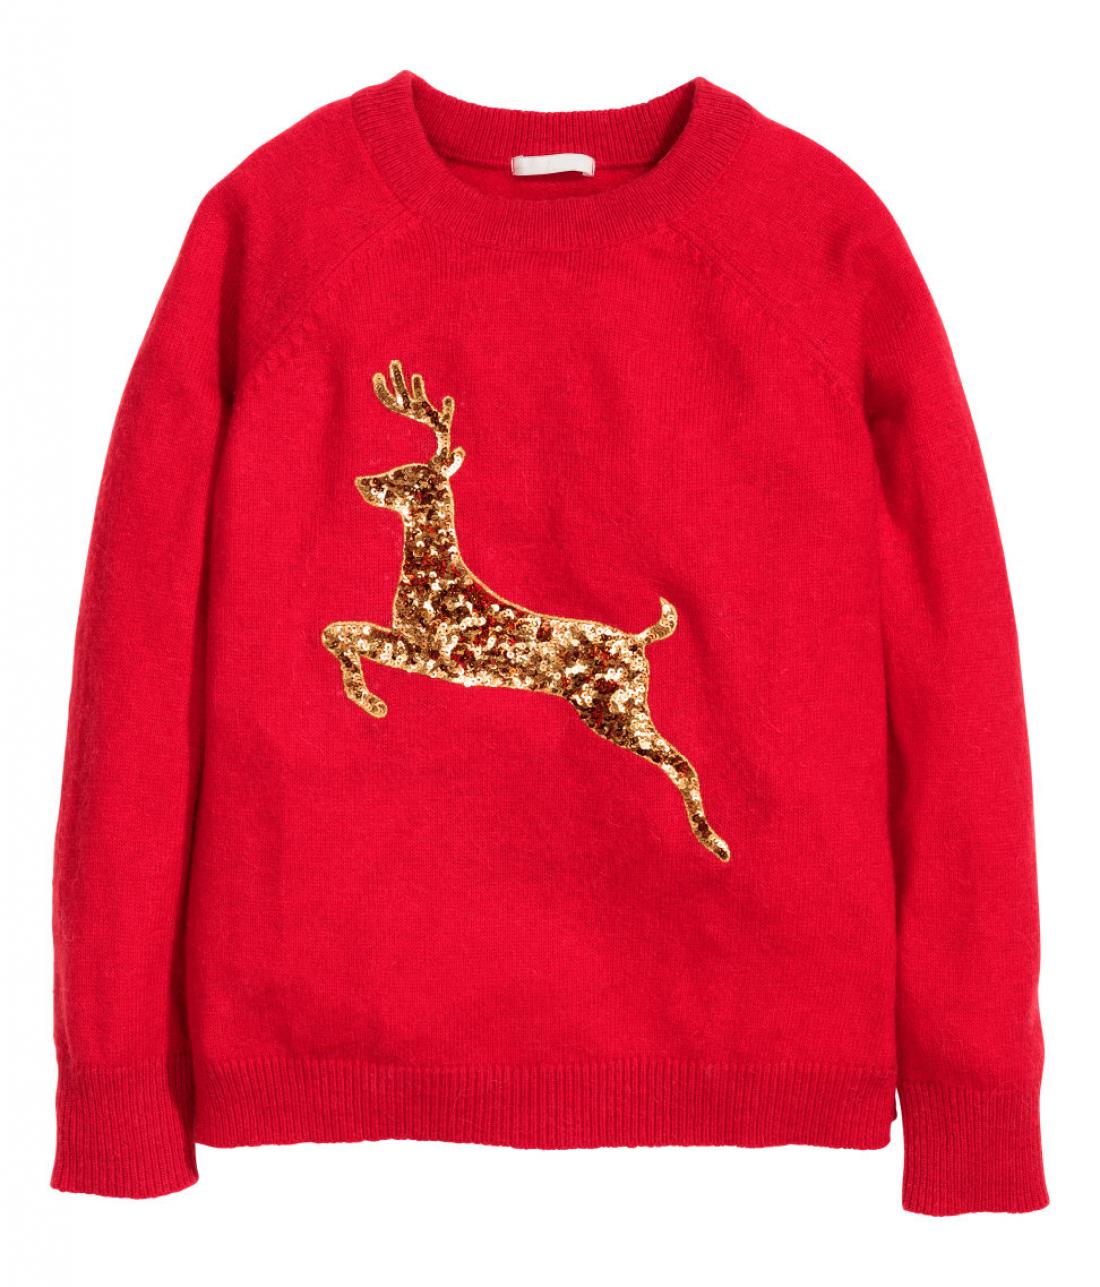 Ženski pulover H&M, 19,99 evra.